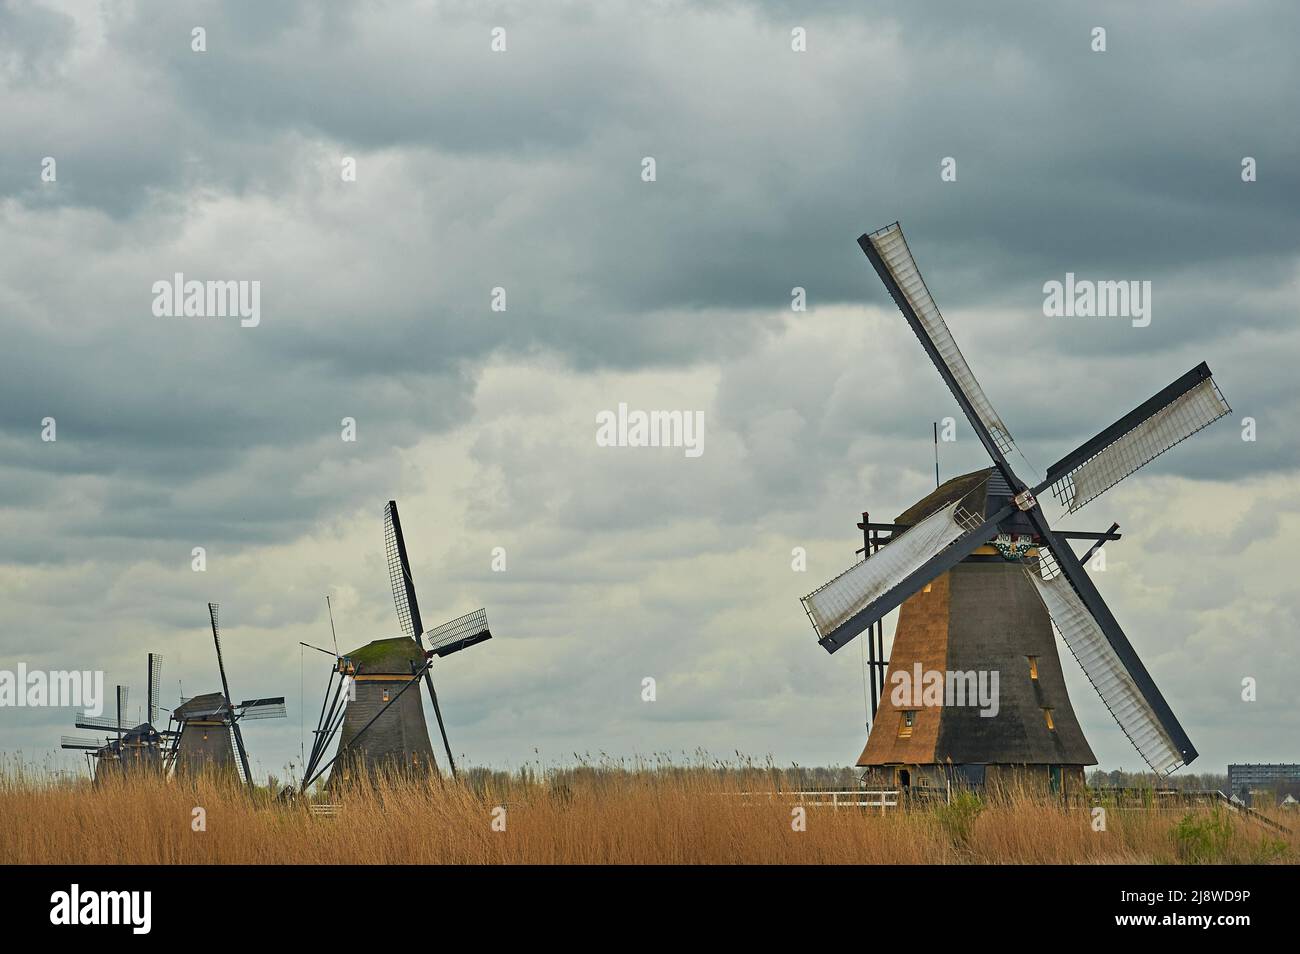 Les moulins à vent de Kinderdijk, en Hollande-Méridionale, aux pays-Bas, bordent le Molentocht. Ce site classé au patrimoine mondial de l'UNESCO se trouve au nord d'Alblasserdam. Banque D'Images